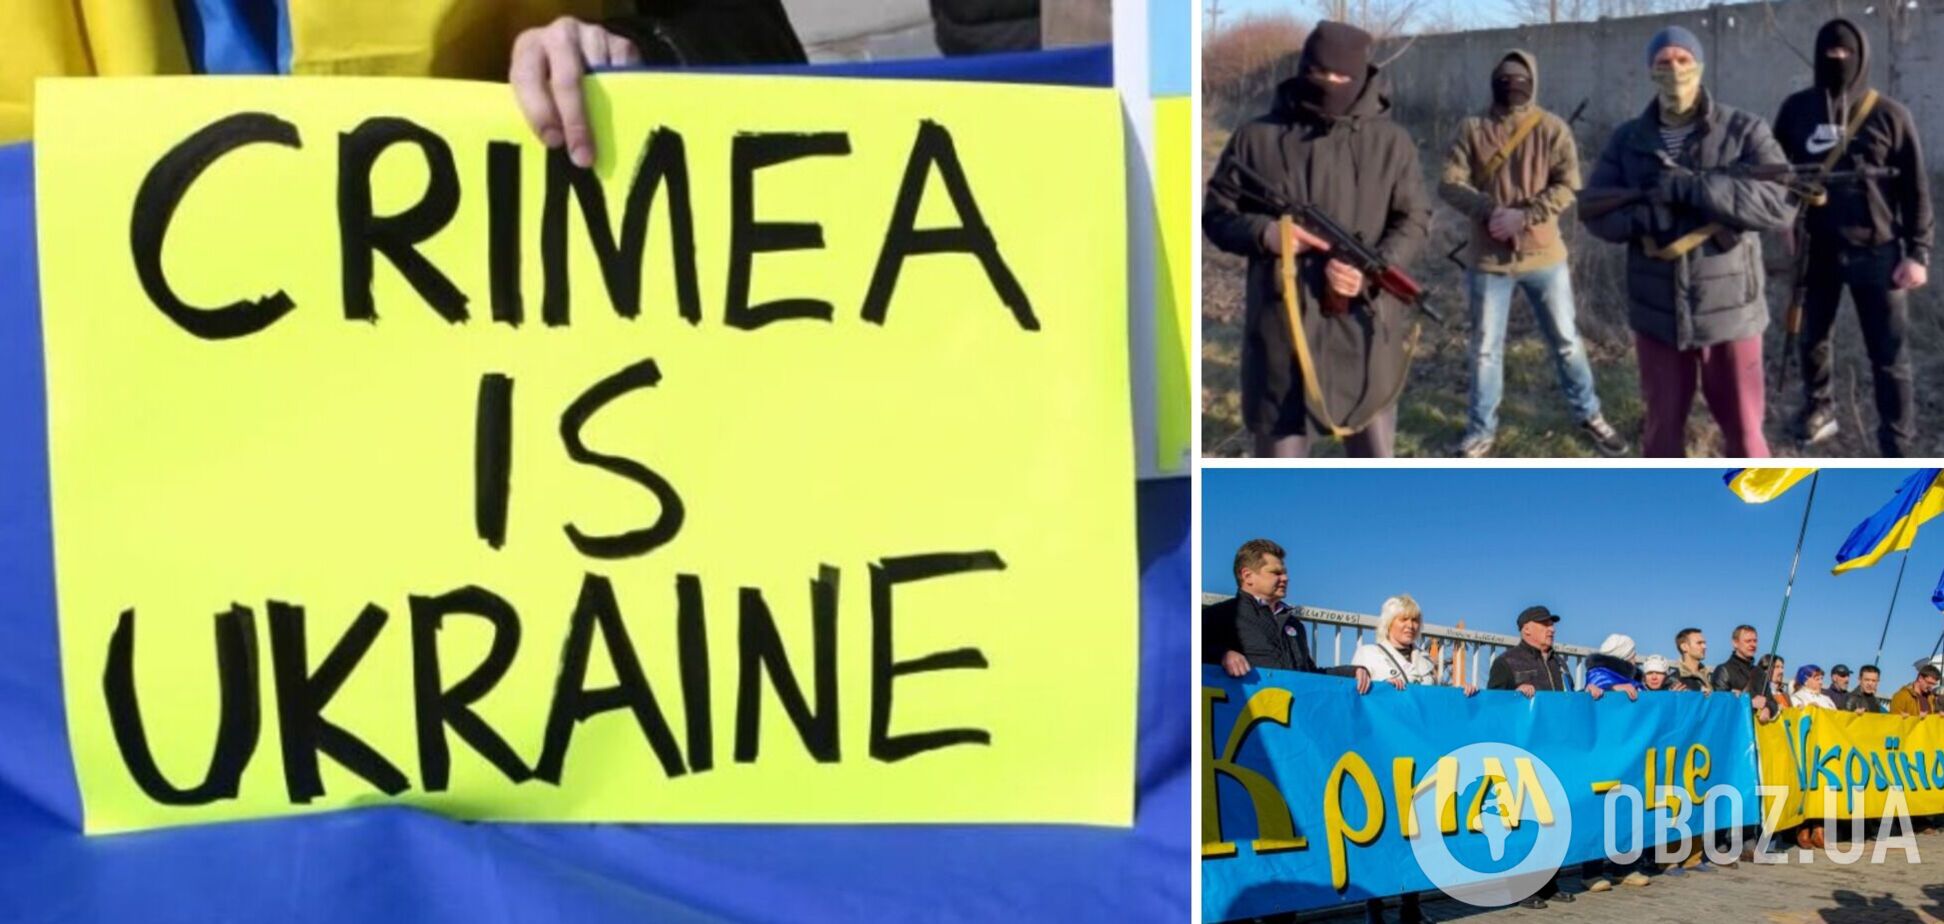 Партизани руху 'Атеш' з Криму повідомили про підготовку підриву залізниці і передали вітання РДК і Брянщині. Відео